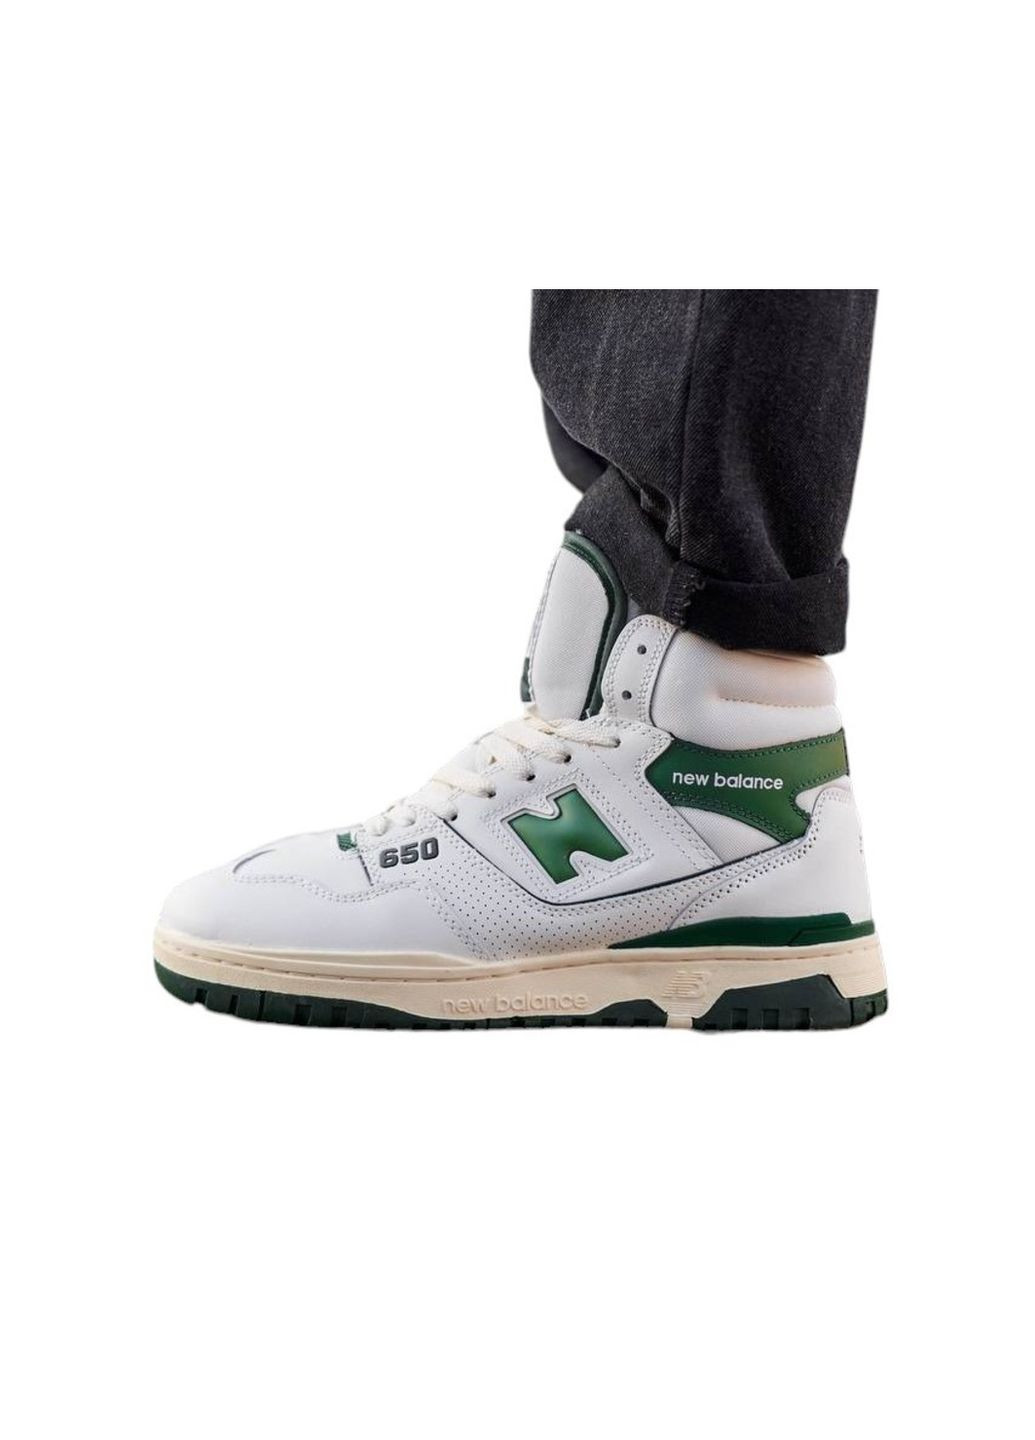 Белые демисезонные кроссовки мужские hight white green fur, вьетнам New Balance 650